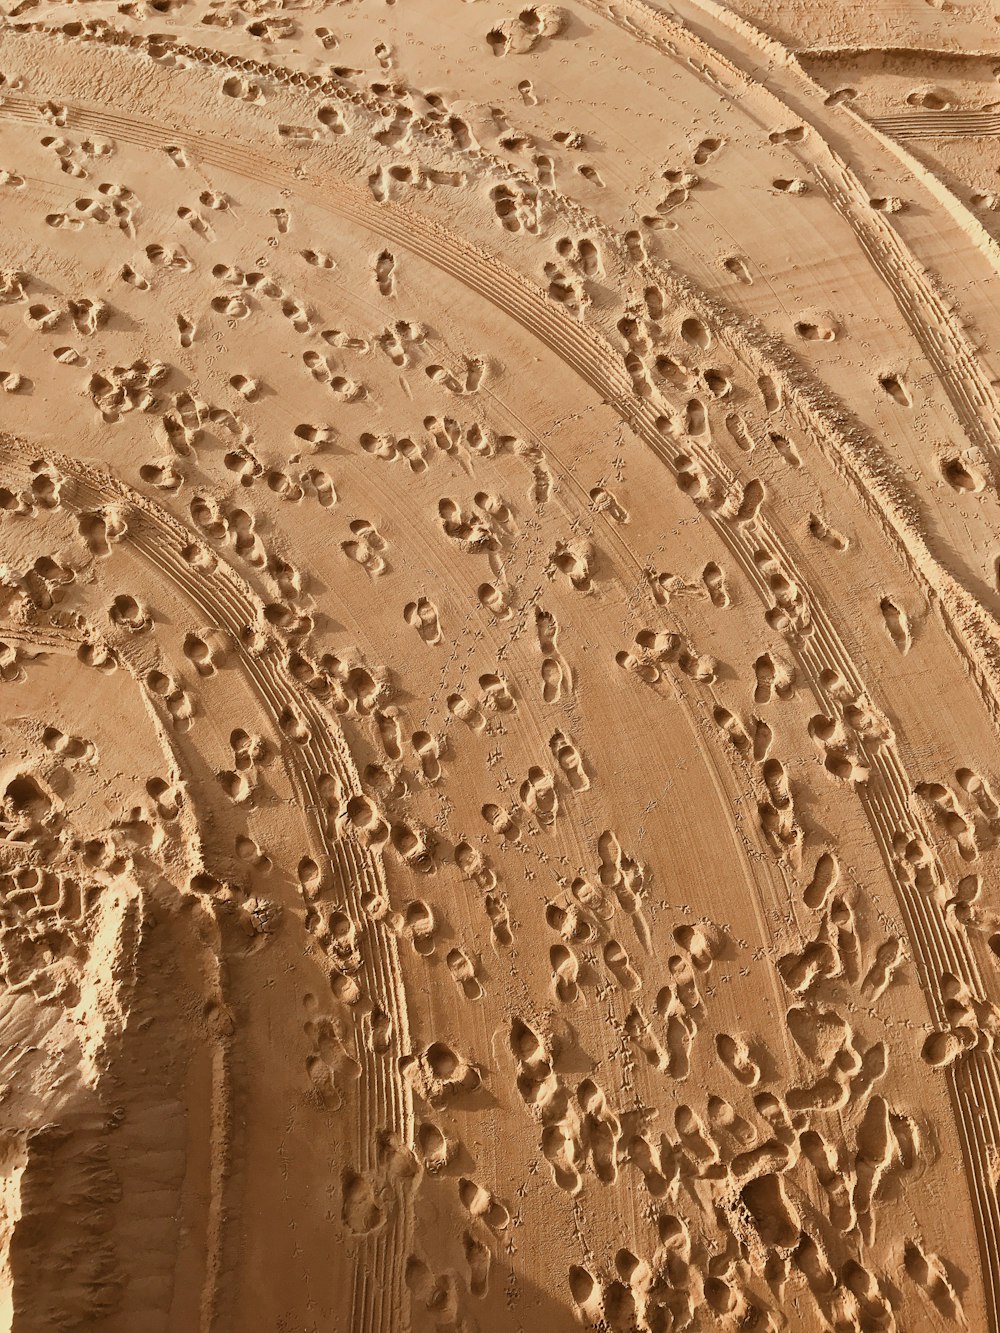 砂の足跡